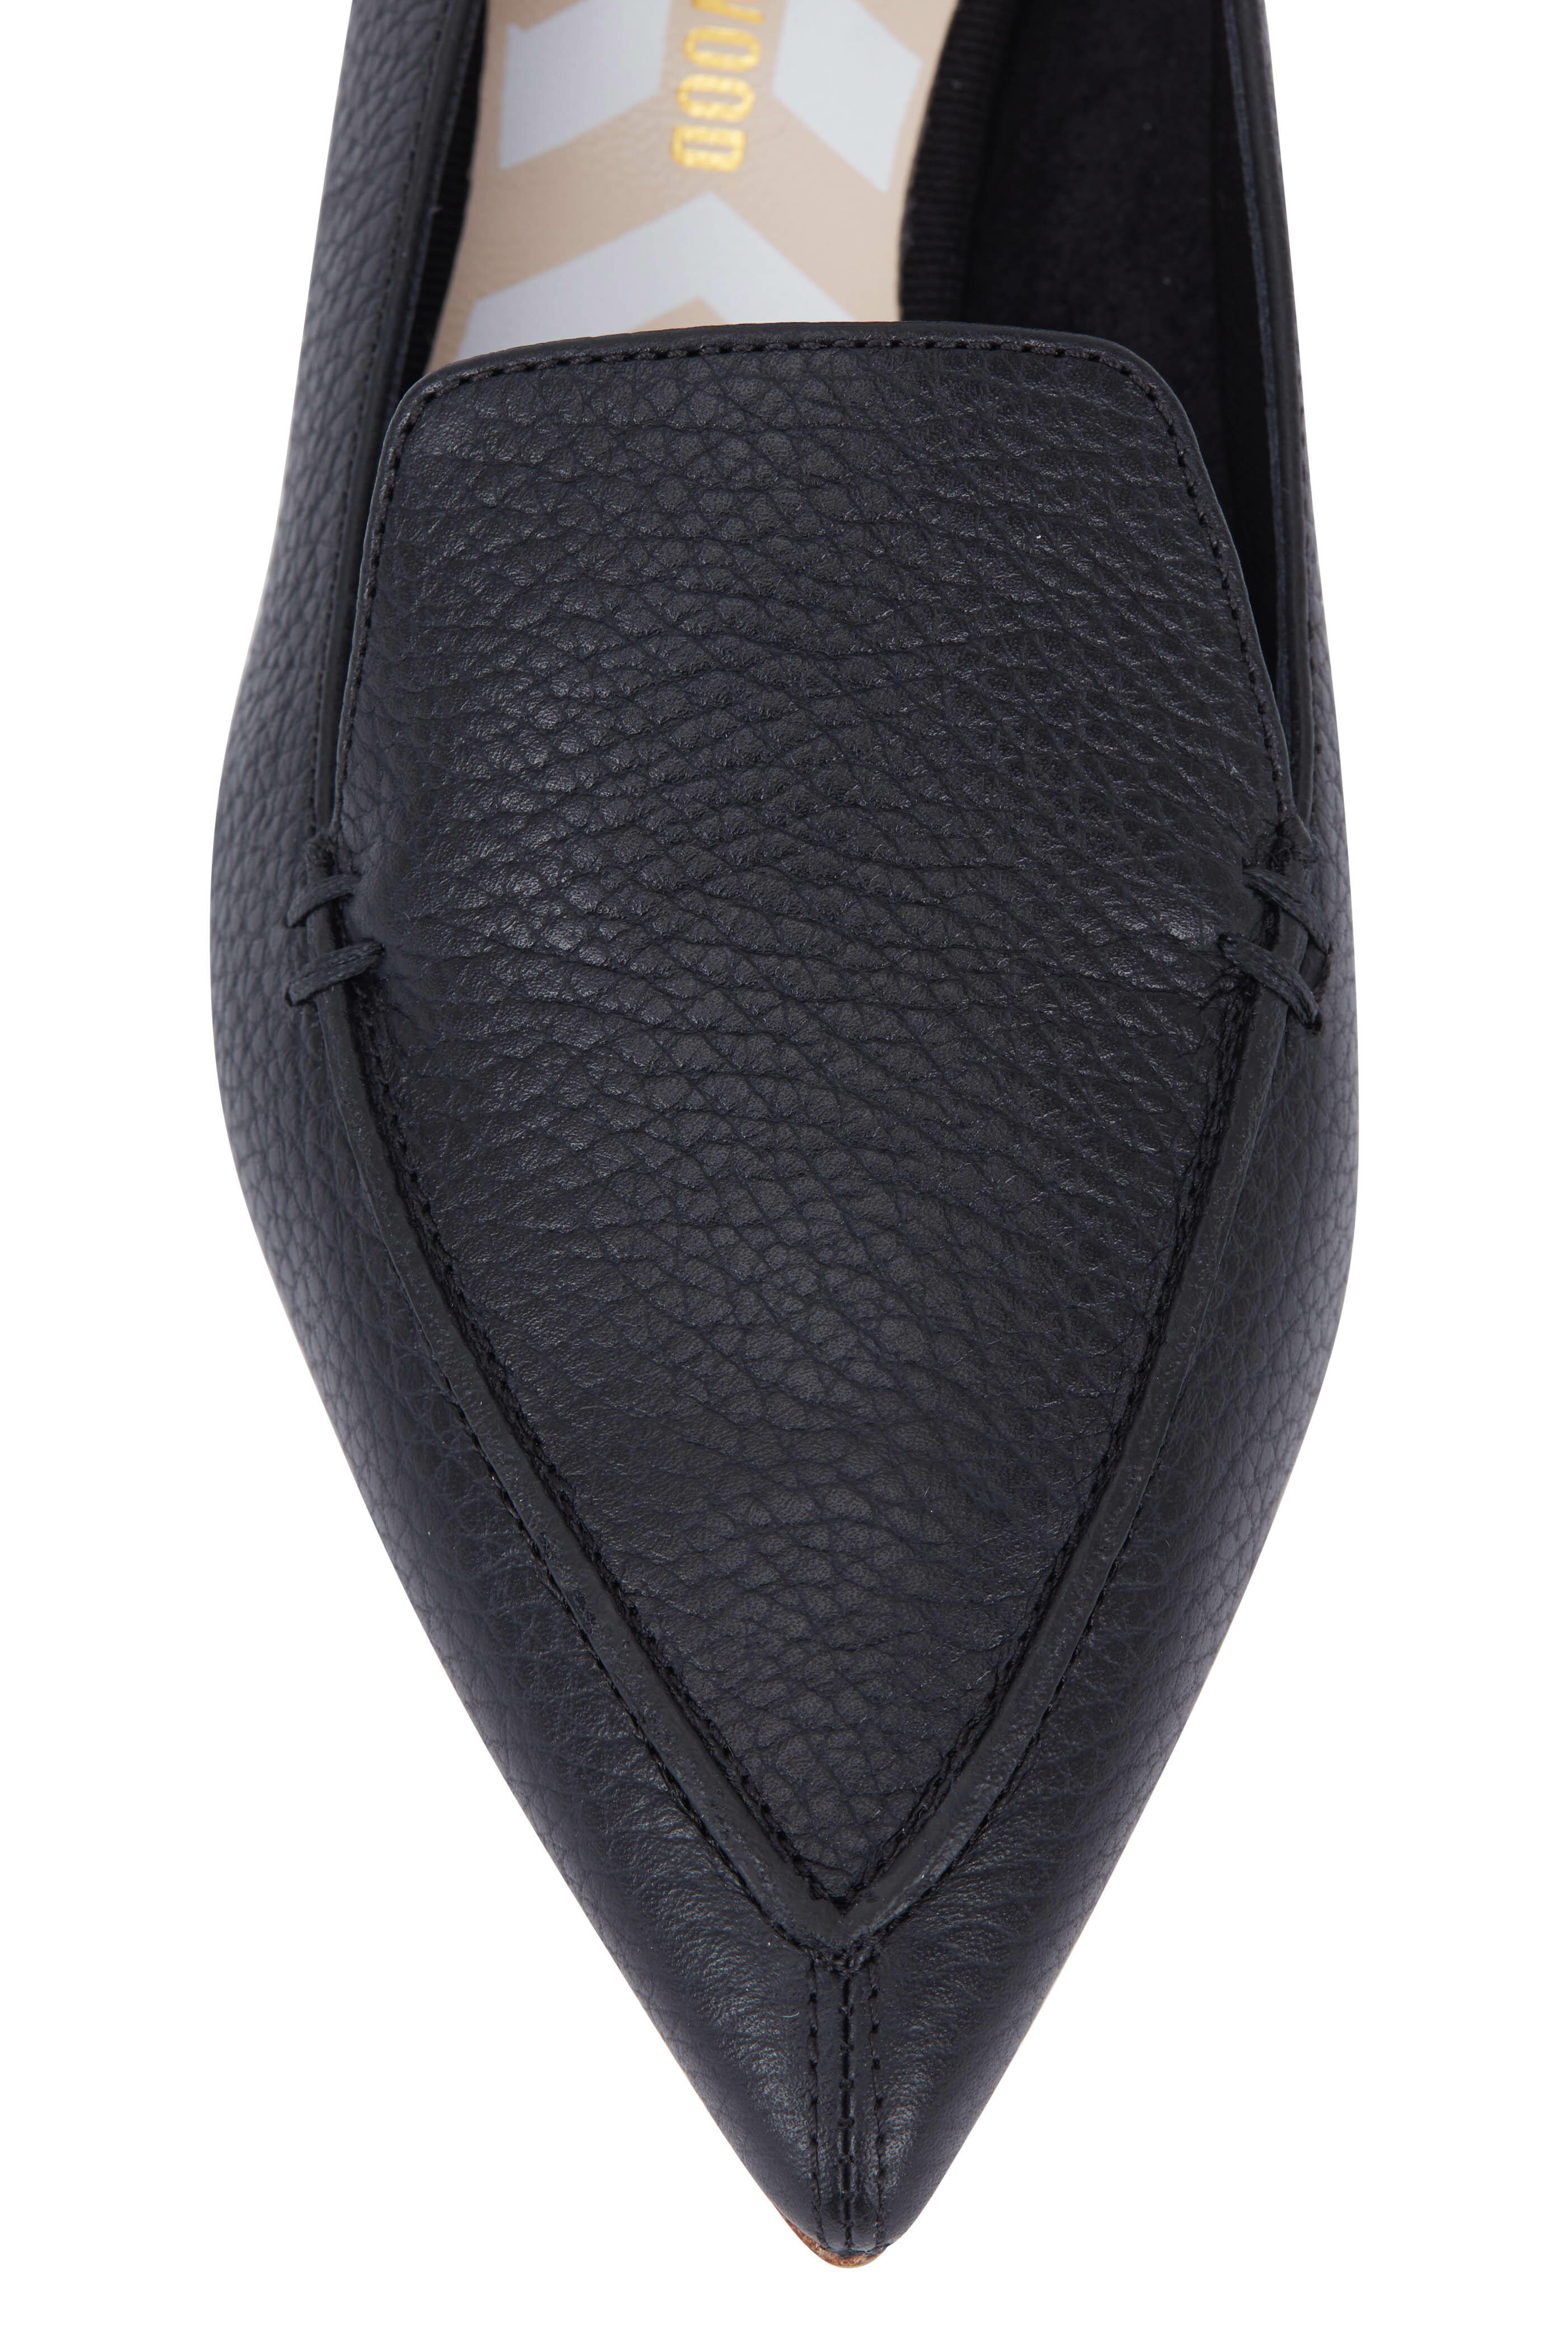 Nicholas Kirkwood - Beya Black Quilted Leather Flat